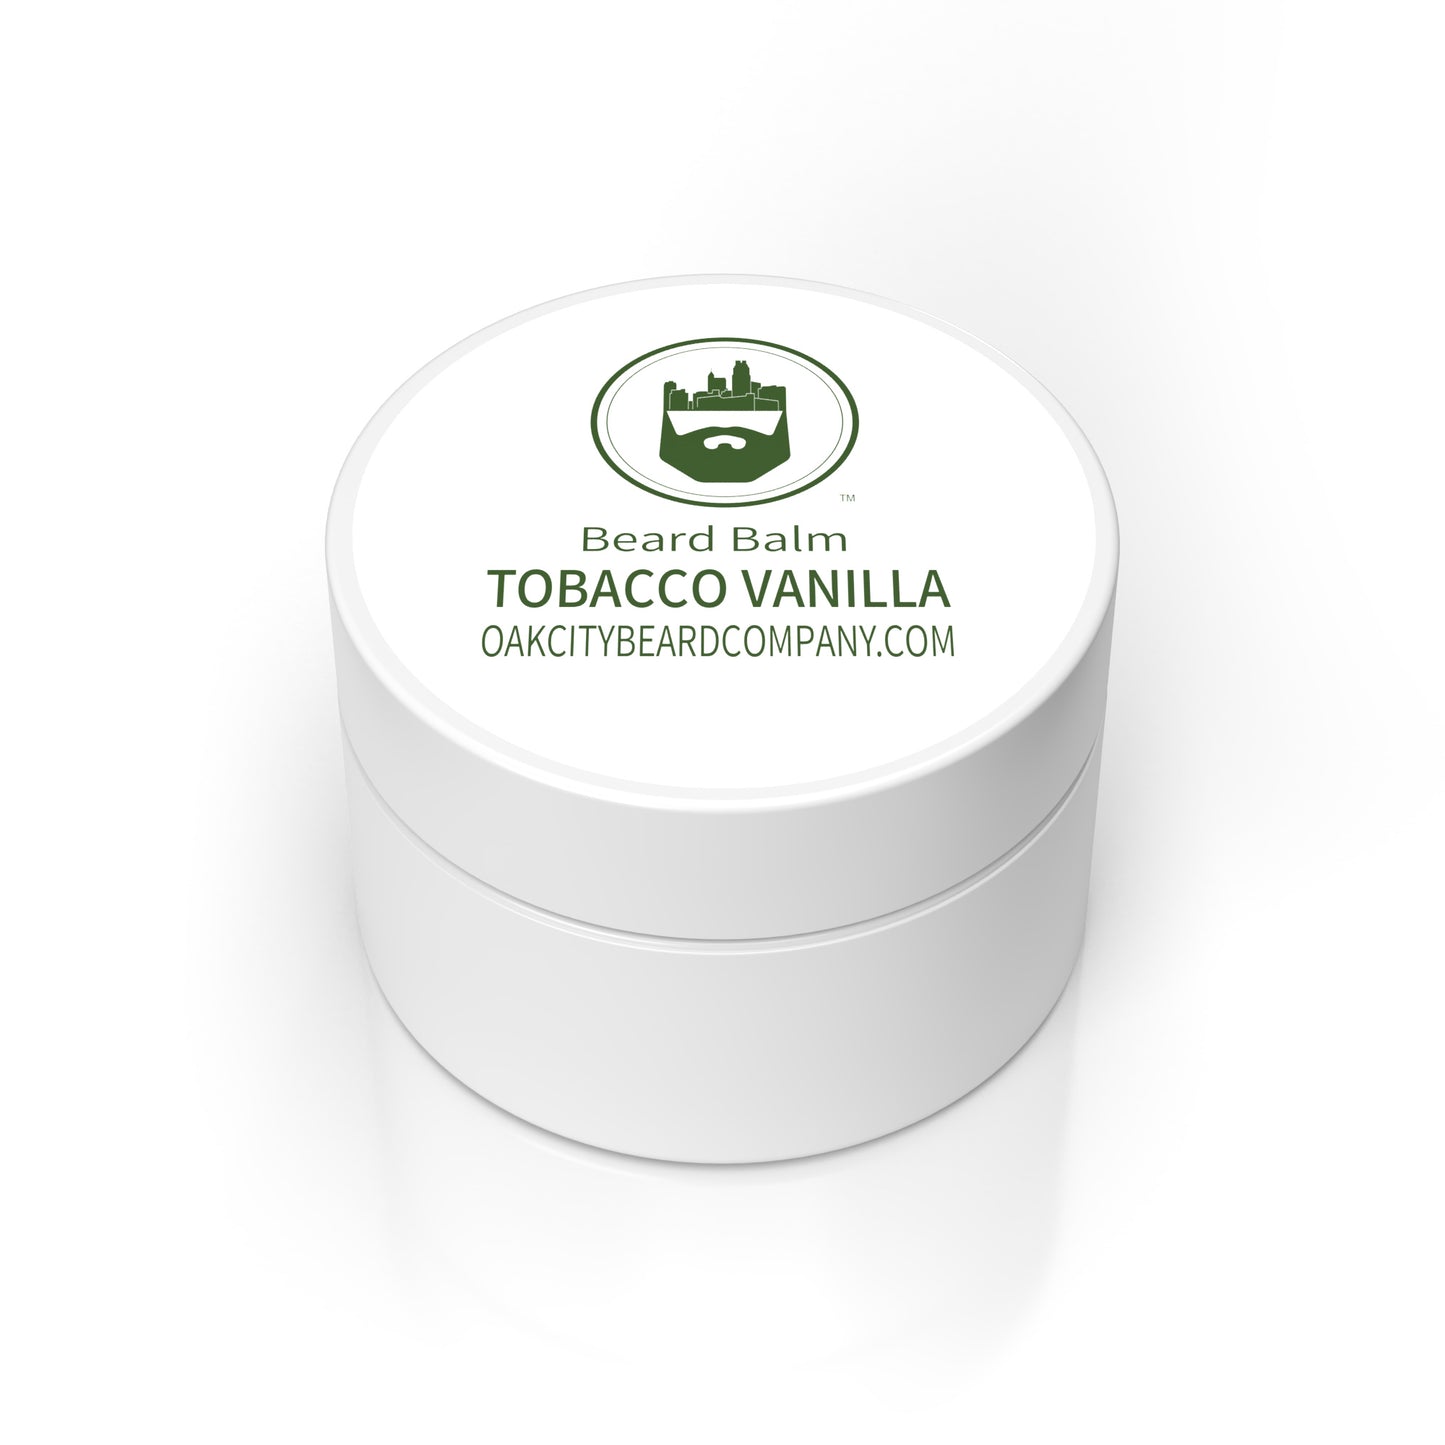 Tobacco Vanilla (Beard Balm) by Oak City Beard Company